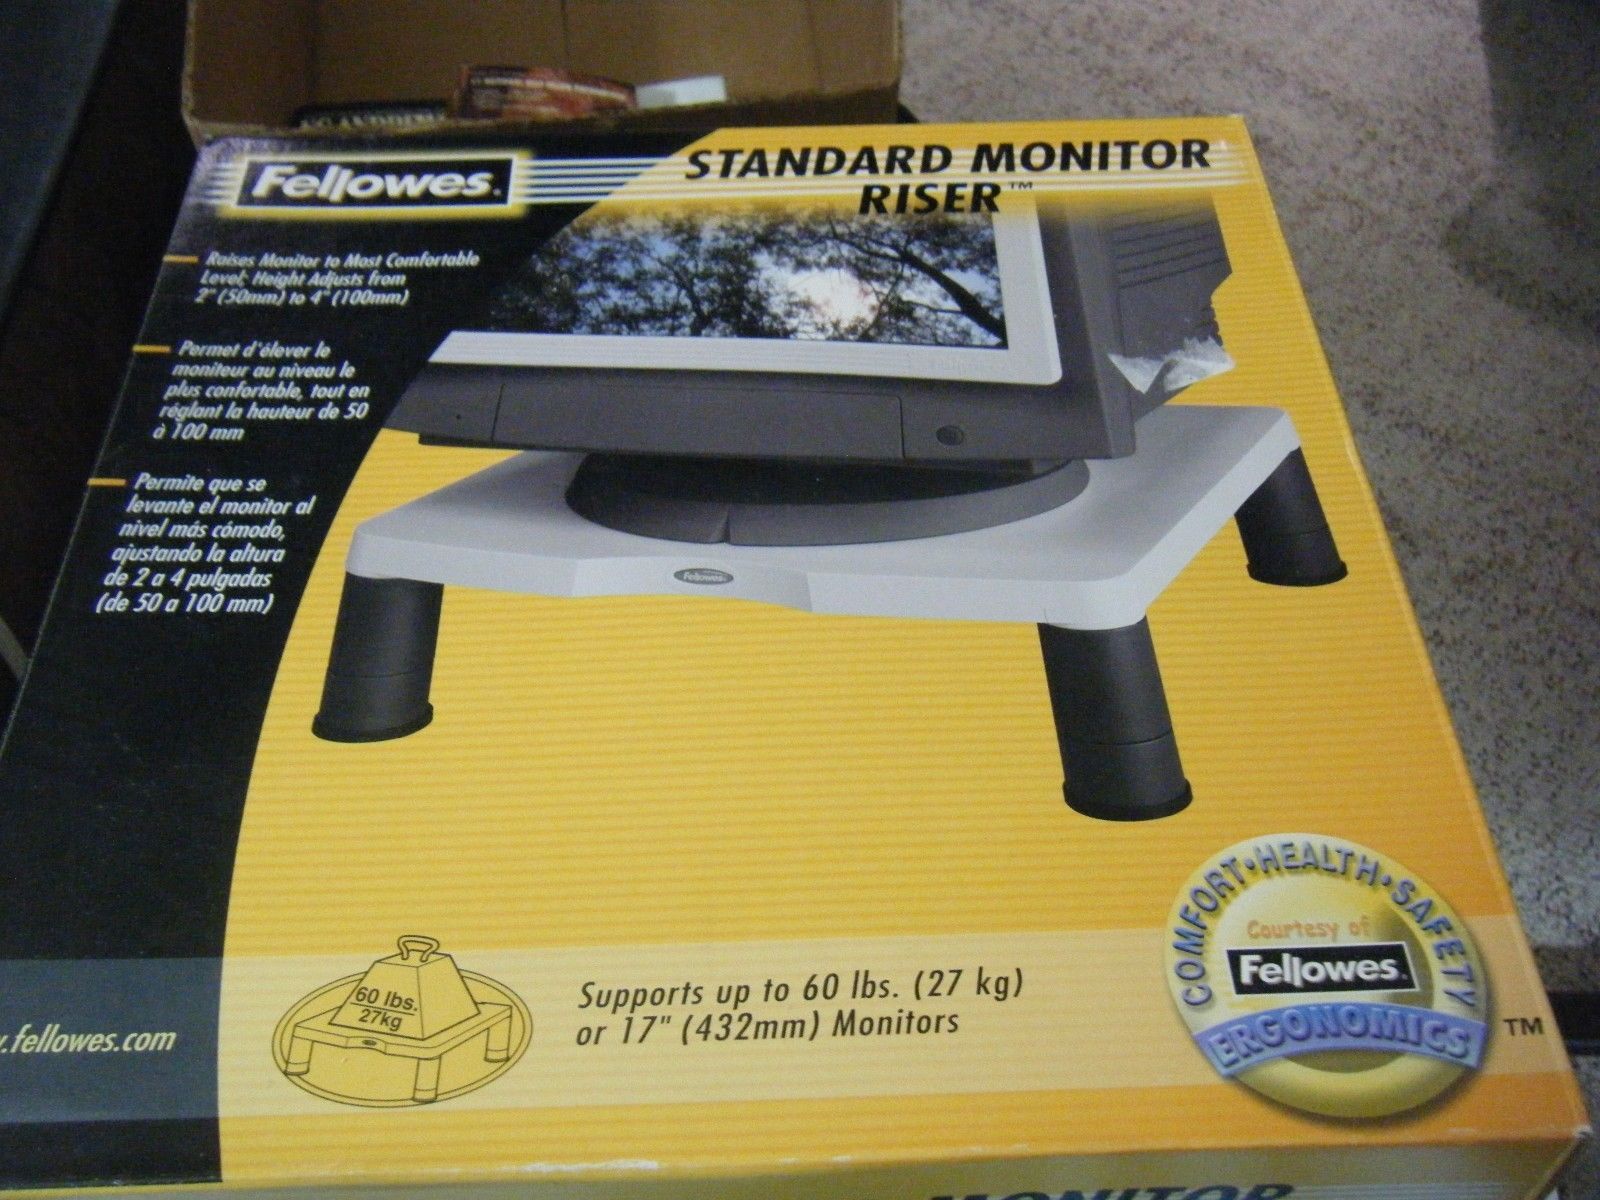 Fellowes Standard Monitor Riser #91712 - $25.93